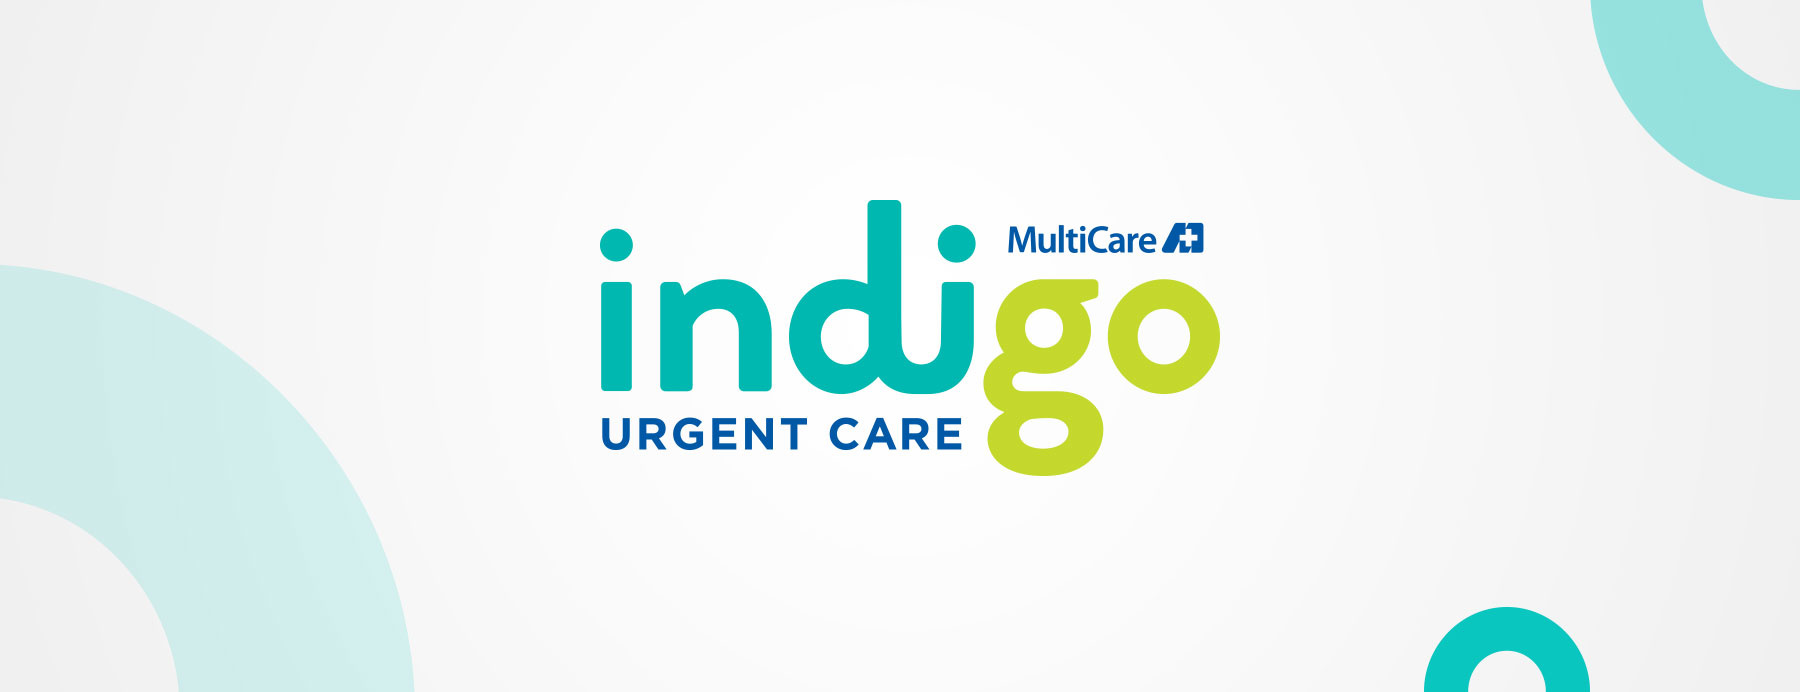 Indigo Urgent Care | Work | LEVEL Mpls